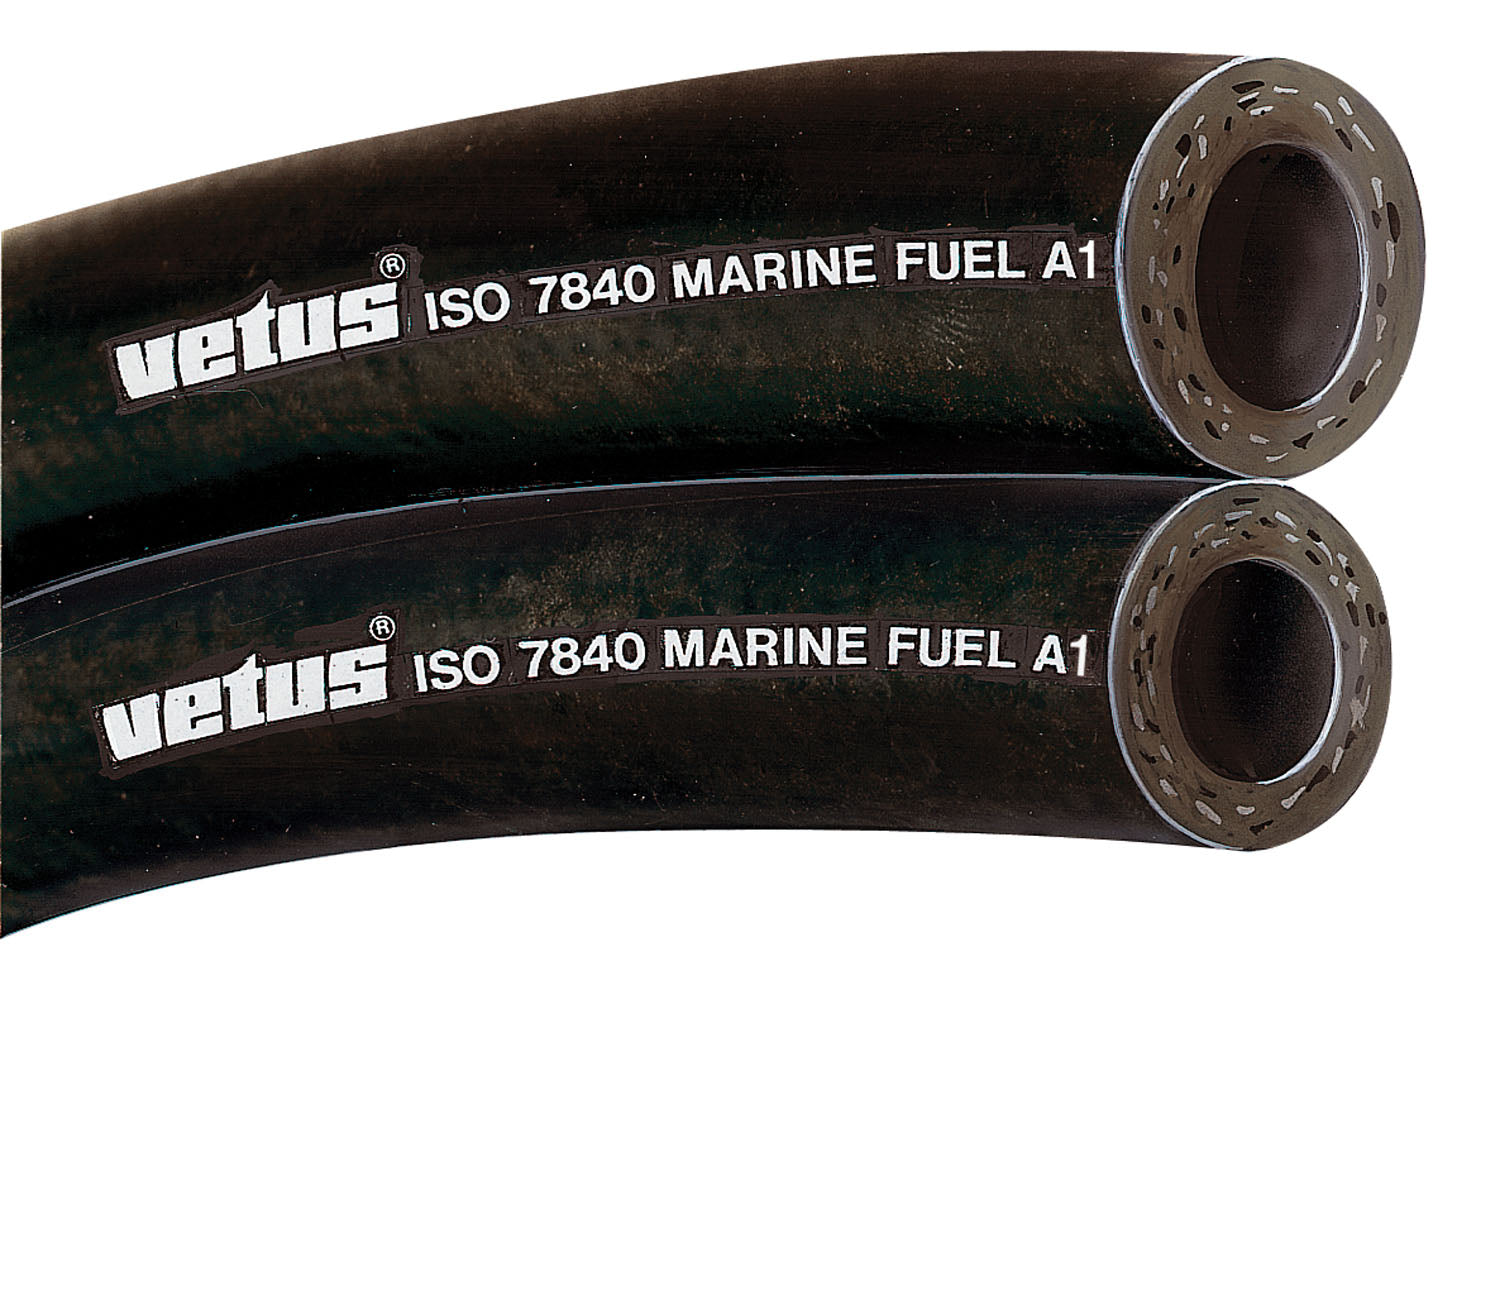 Vetus FUHOSE08A - Fuel hose 8x16mm iso 7840-marine fuel A1